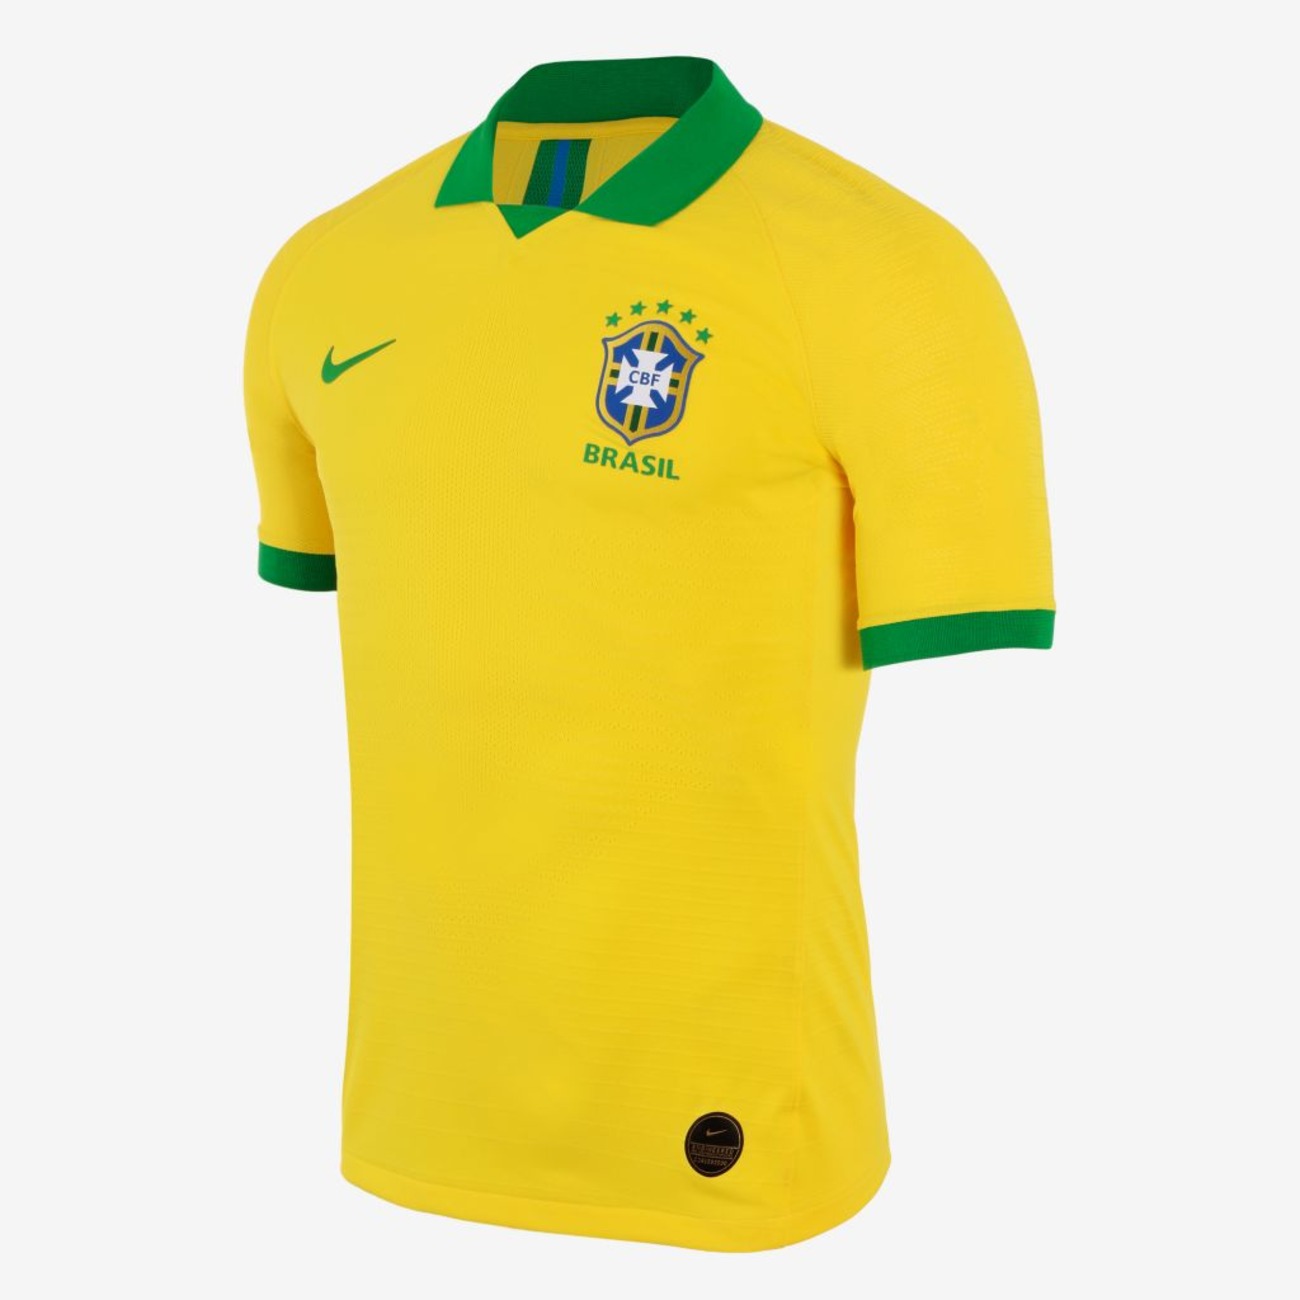 Oferta de Camiseta Nike Brasil Comemorativa América 2019/20 Jogador Masculina - Nike - Just Do It